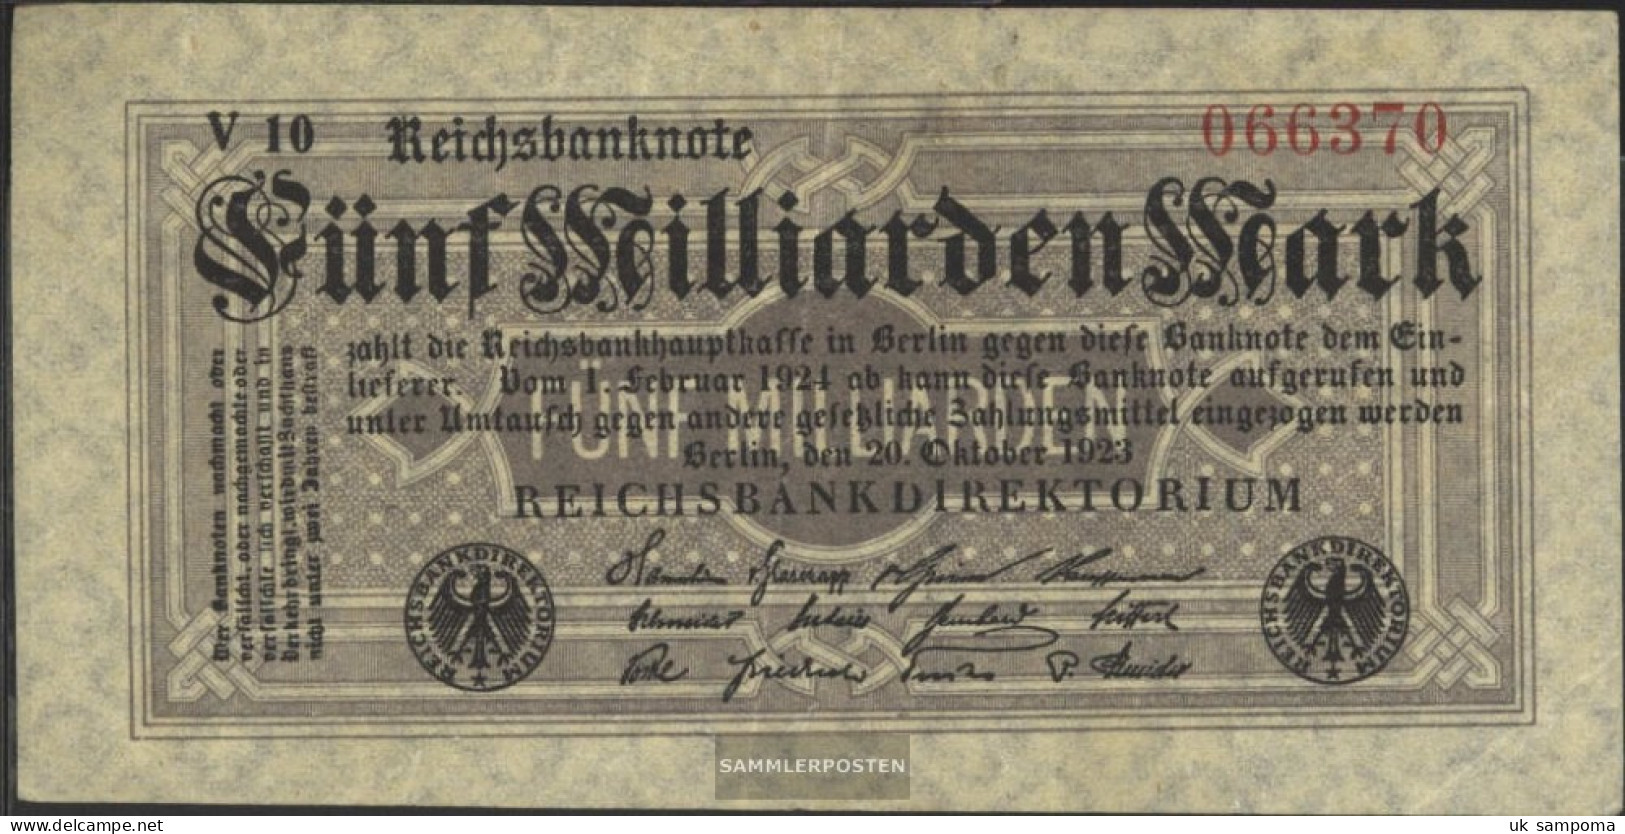 German Empire Rosenbg: 120c, 6stellige KN, Firmenzeichen Black Used (III) 1923 5 Billion. Mark - 5 Miljard Mark